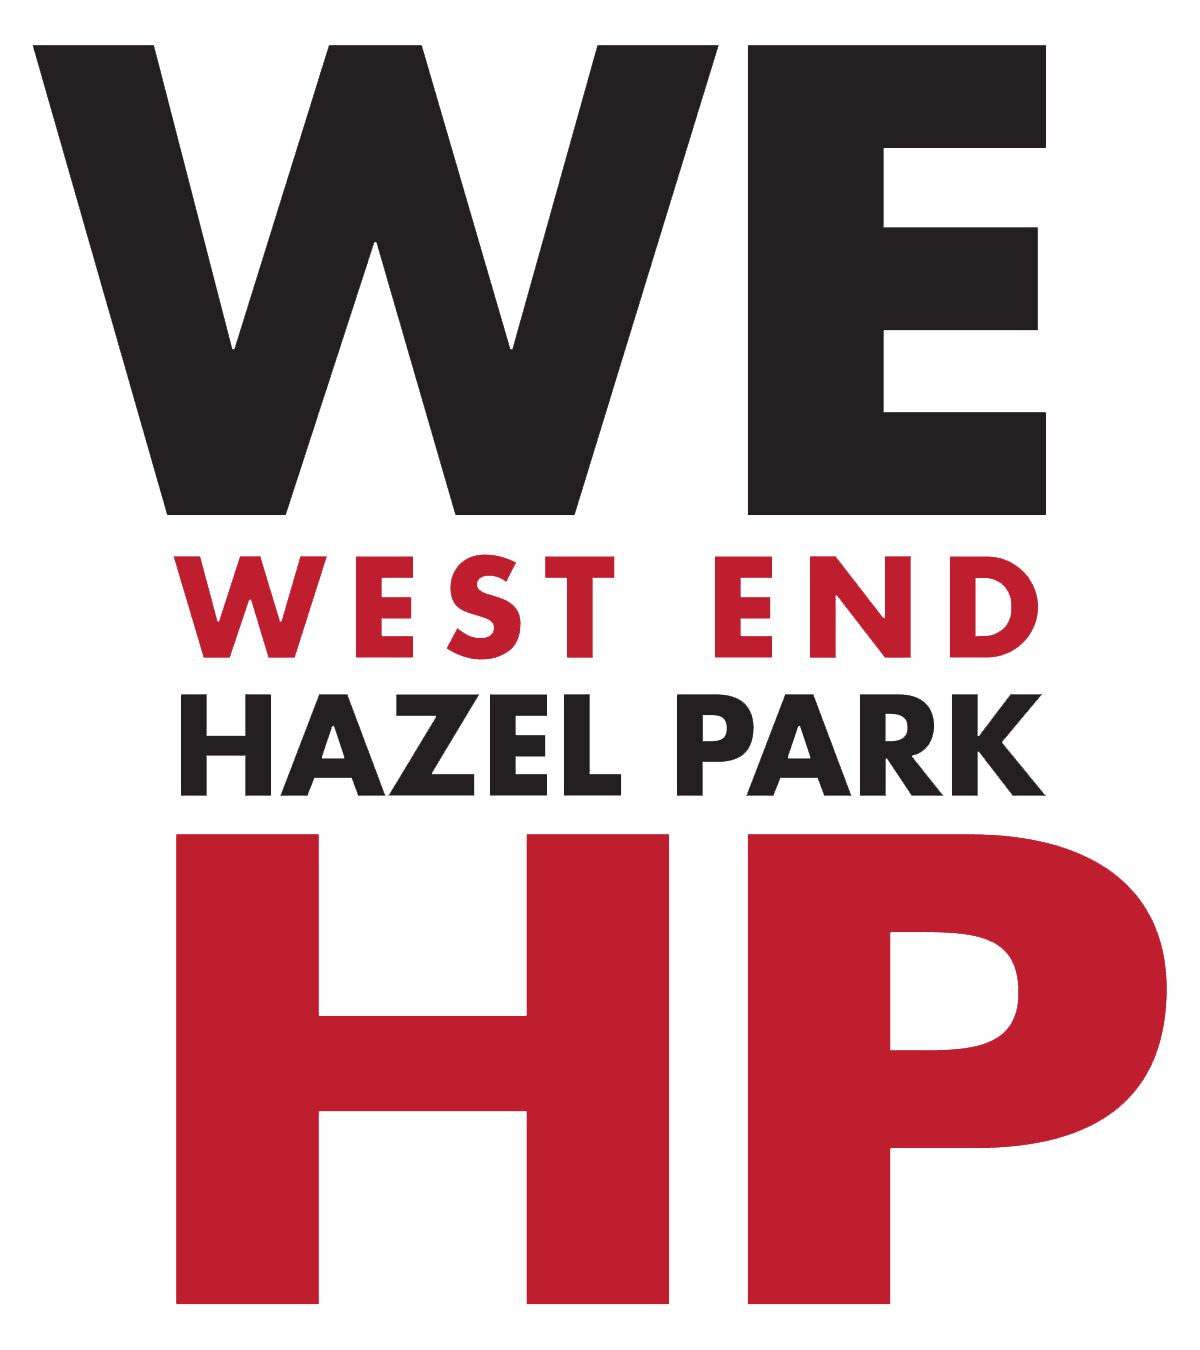 West End Hazel Park Business Coalition